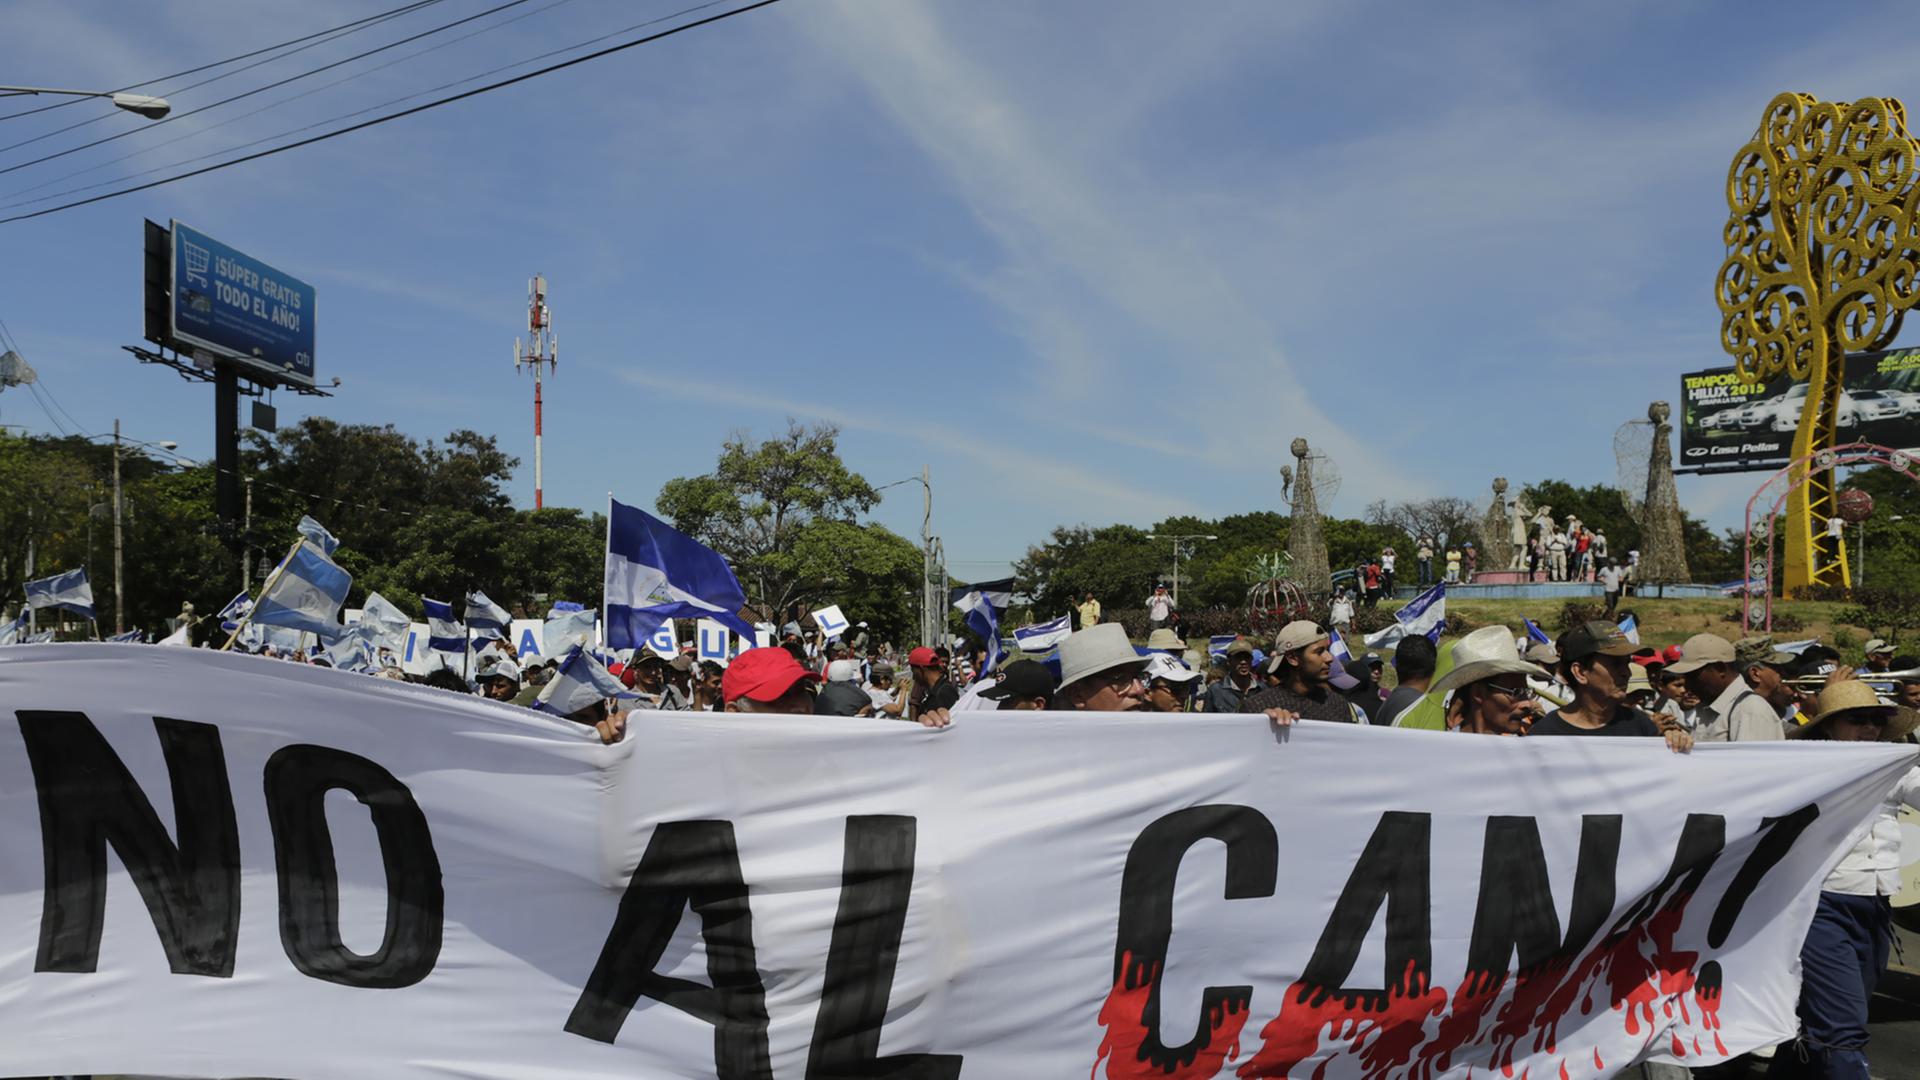 Demonstranten in Nicaraguas Hauptstadt Managua mit einem Banner, auf dem No al canal (Nein zum Kanal) steht.